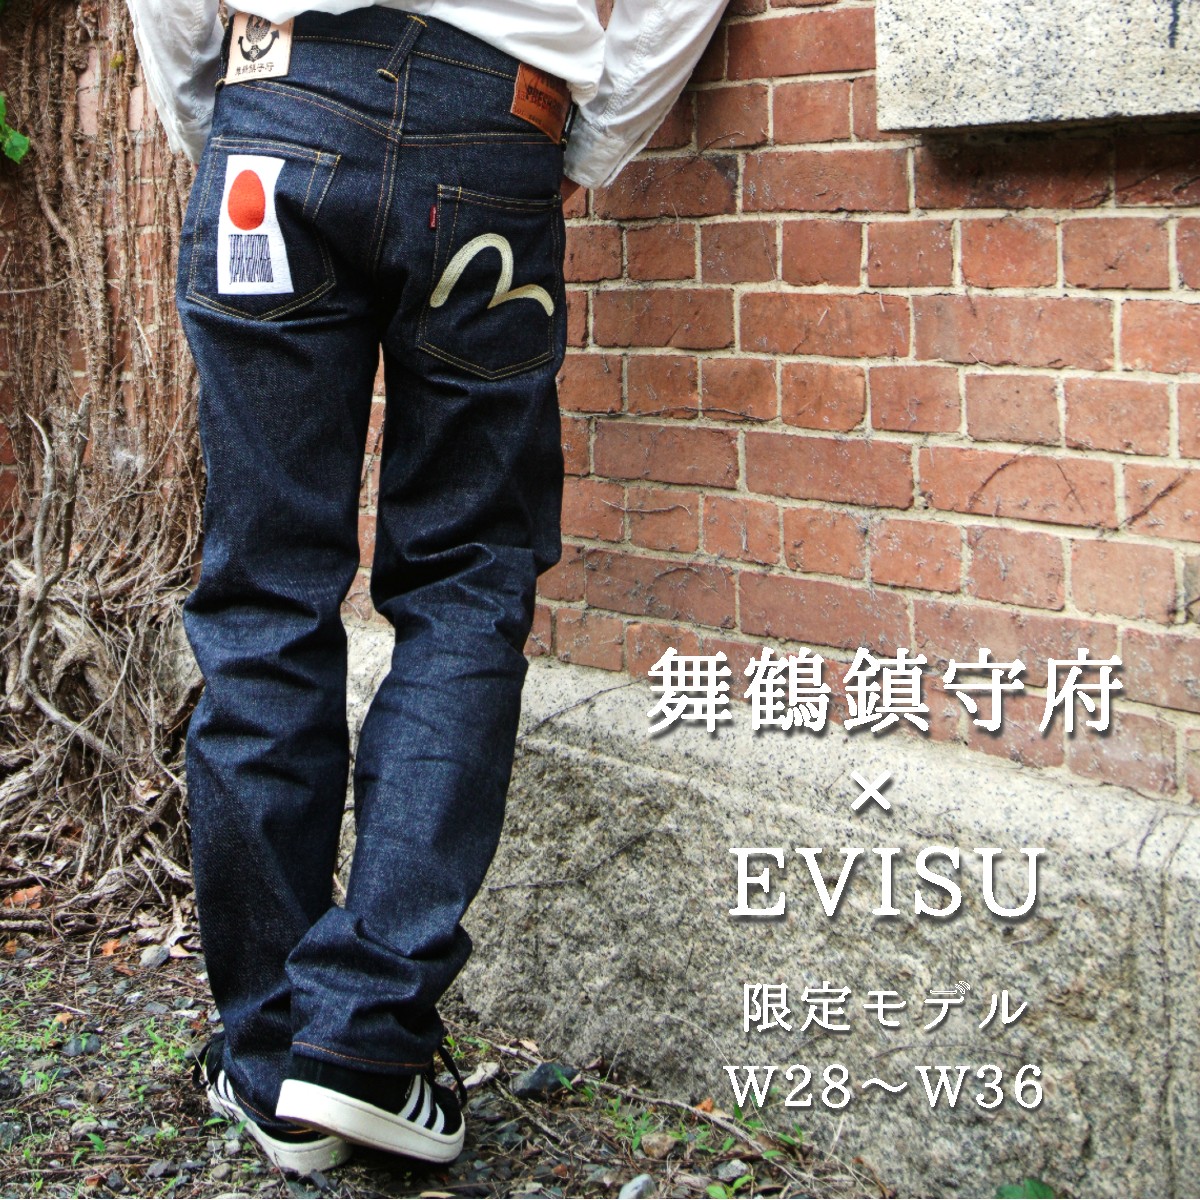 注目の Evisu ジーンズ 日本製 Japan in made エビス 36×36 デニム/ジーンズ